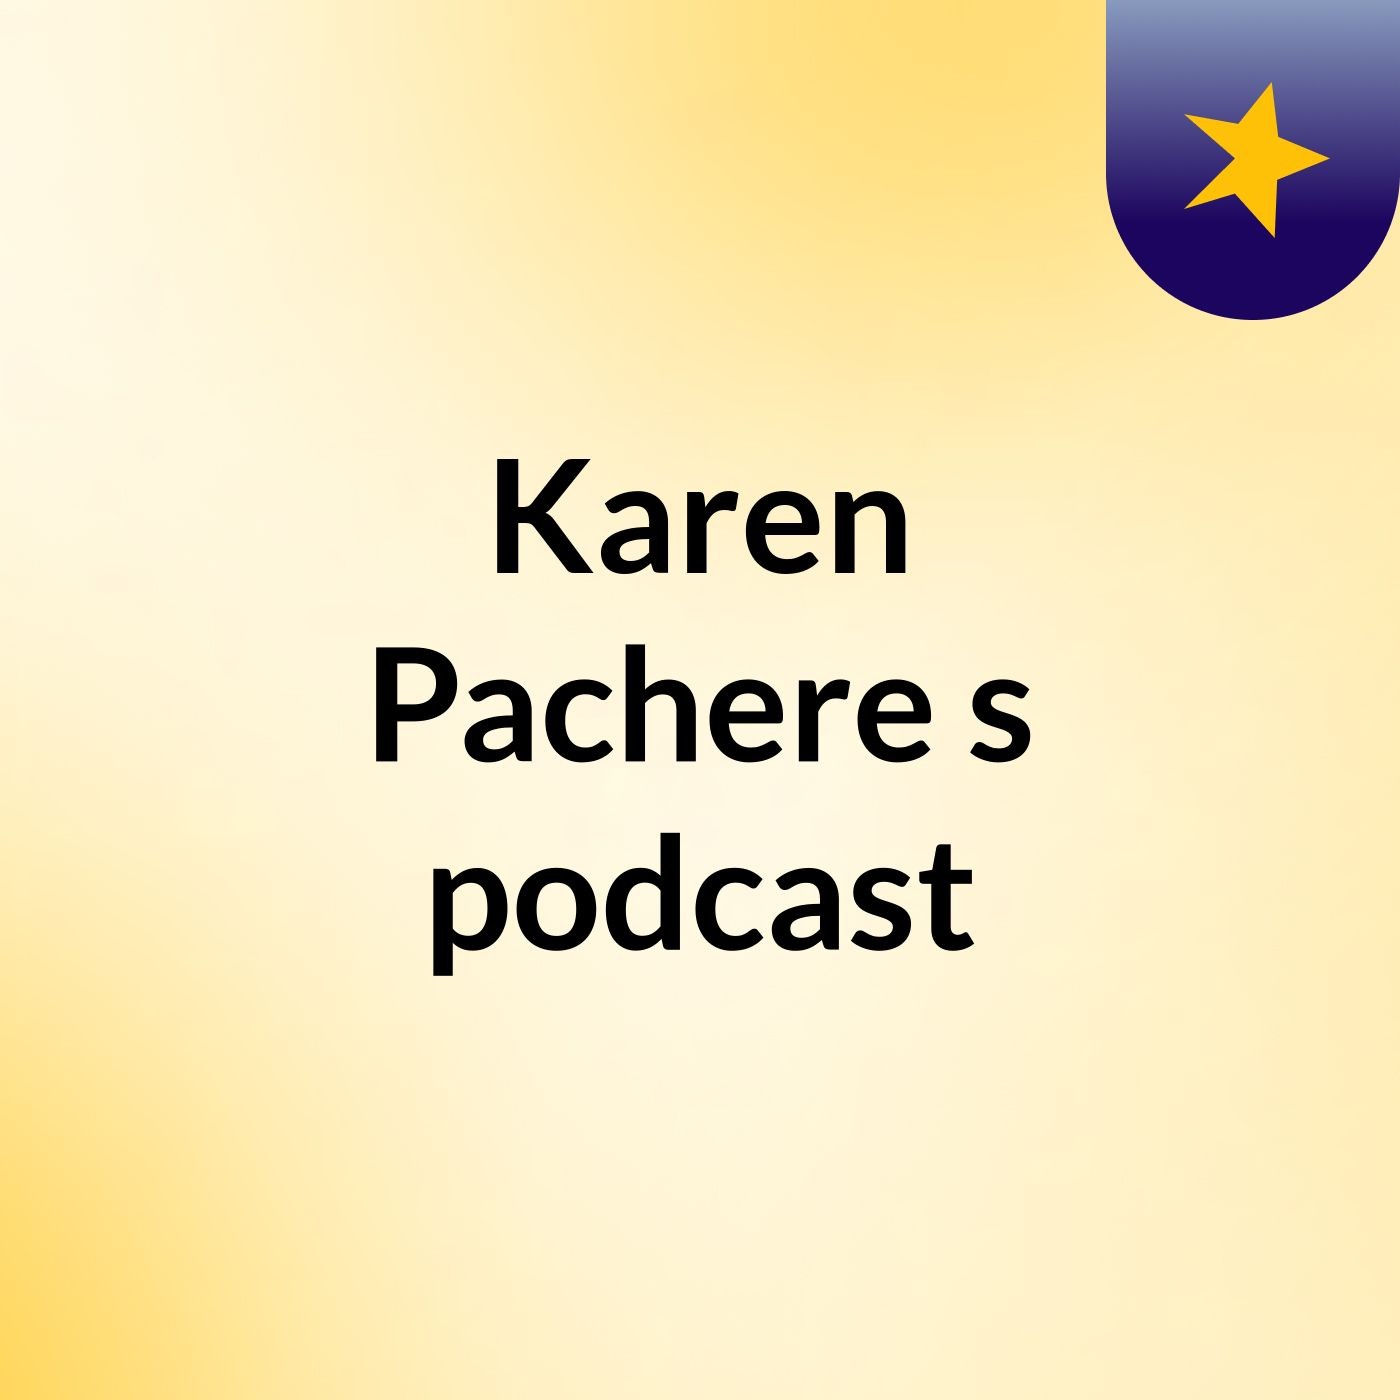 Karen Pachere's podcast